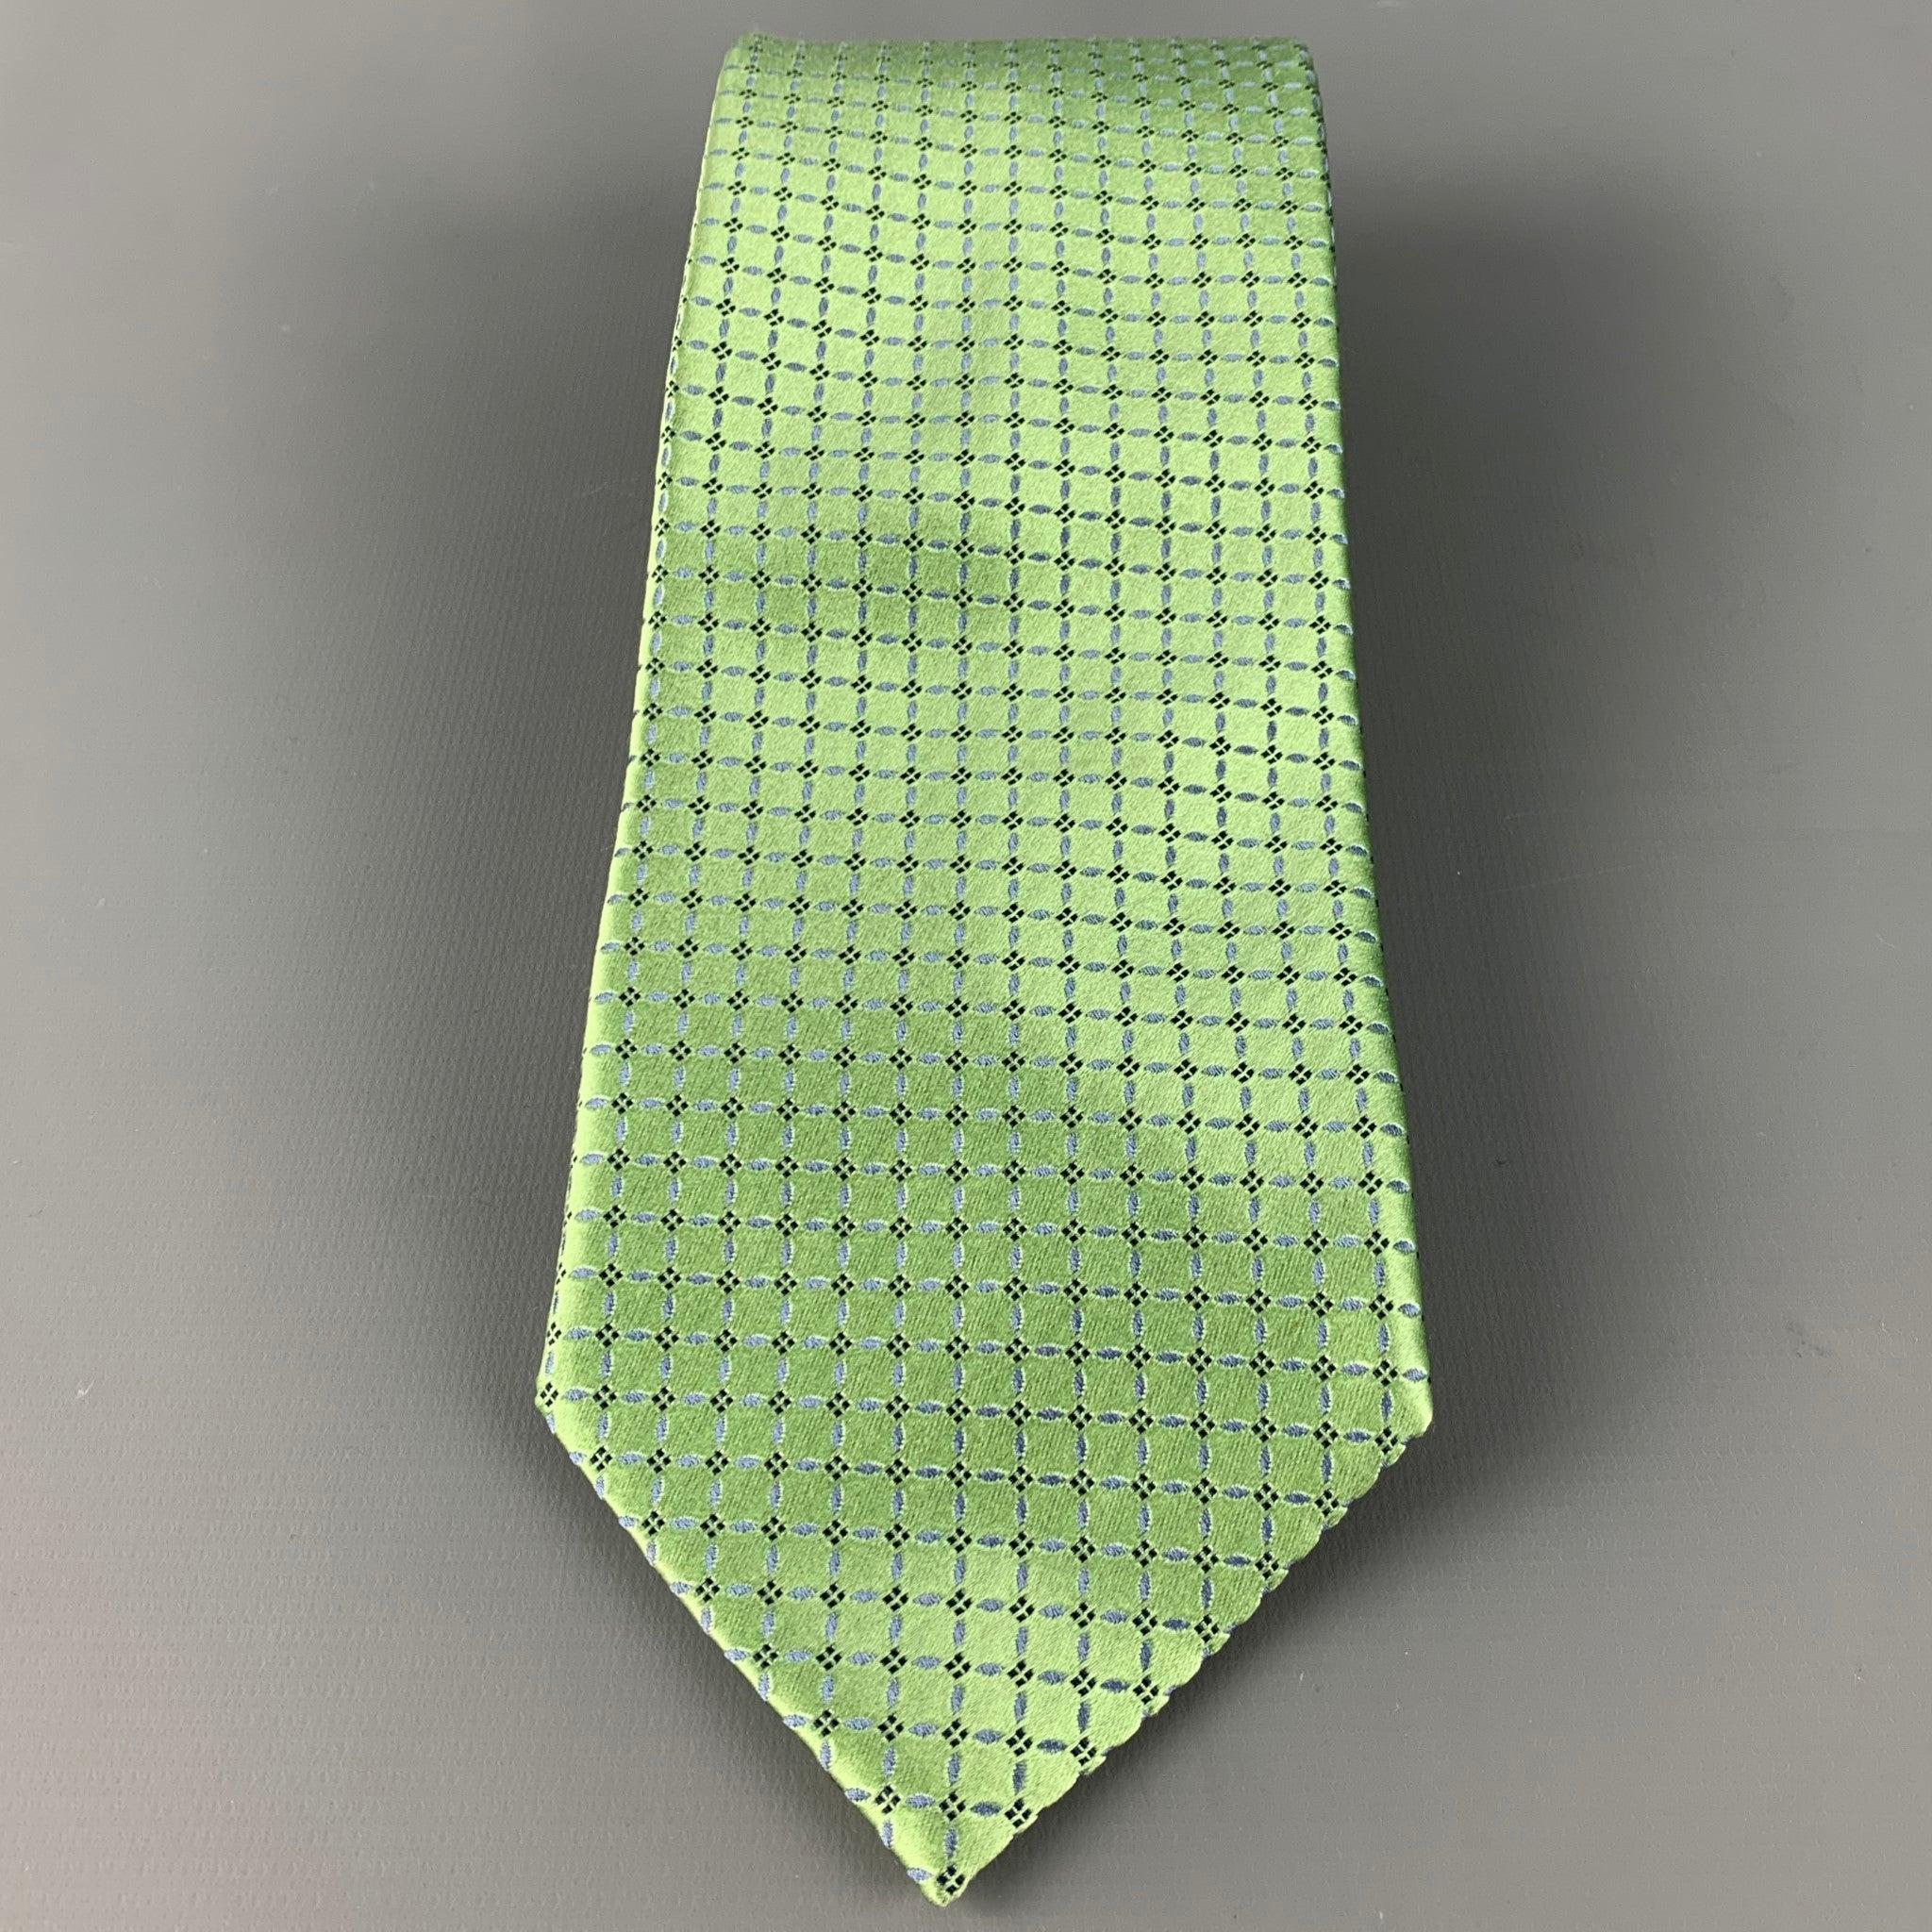 ERMENEGILDO ZEGNA
cravate en satin de soie vert, avec un motif à carreaux bleu clair. Fabriqué en Italie. Très bon état. 

Mesures : 
  Largeur : 3.5 pouces Longueur : 60 pouces 
  
  
 
Référence Sui Generis : 126572
Catégorie : Cravate
Plus de